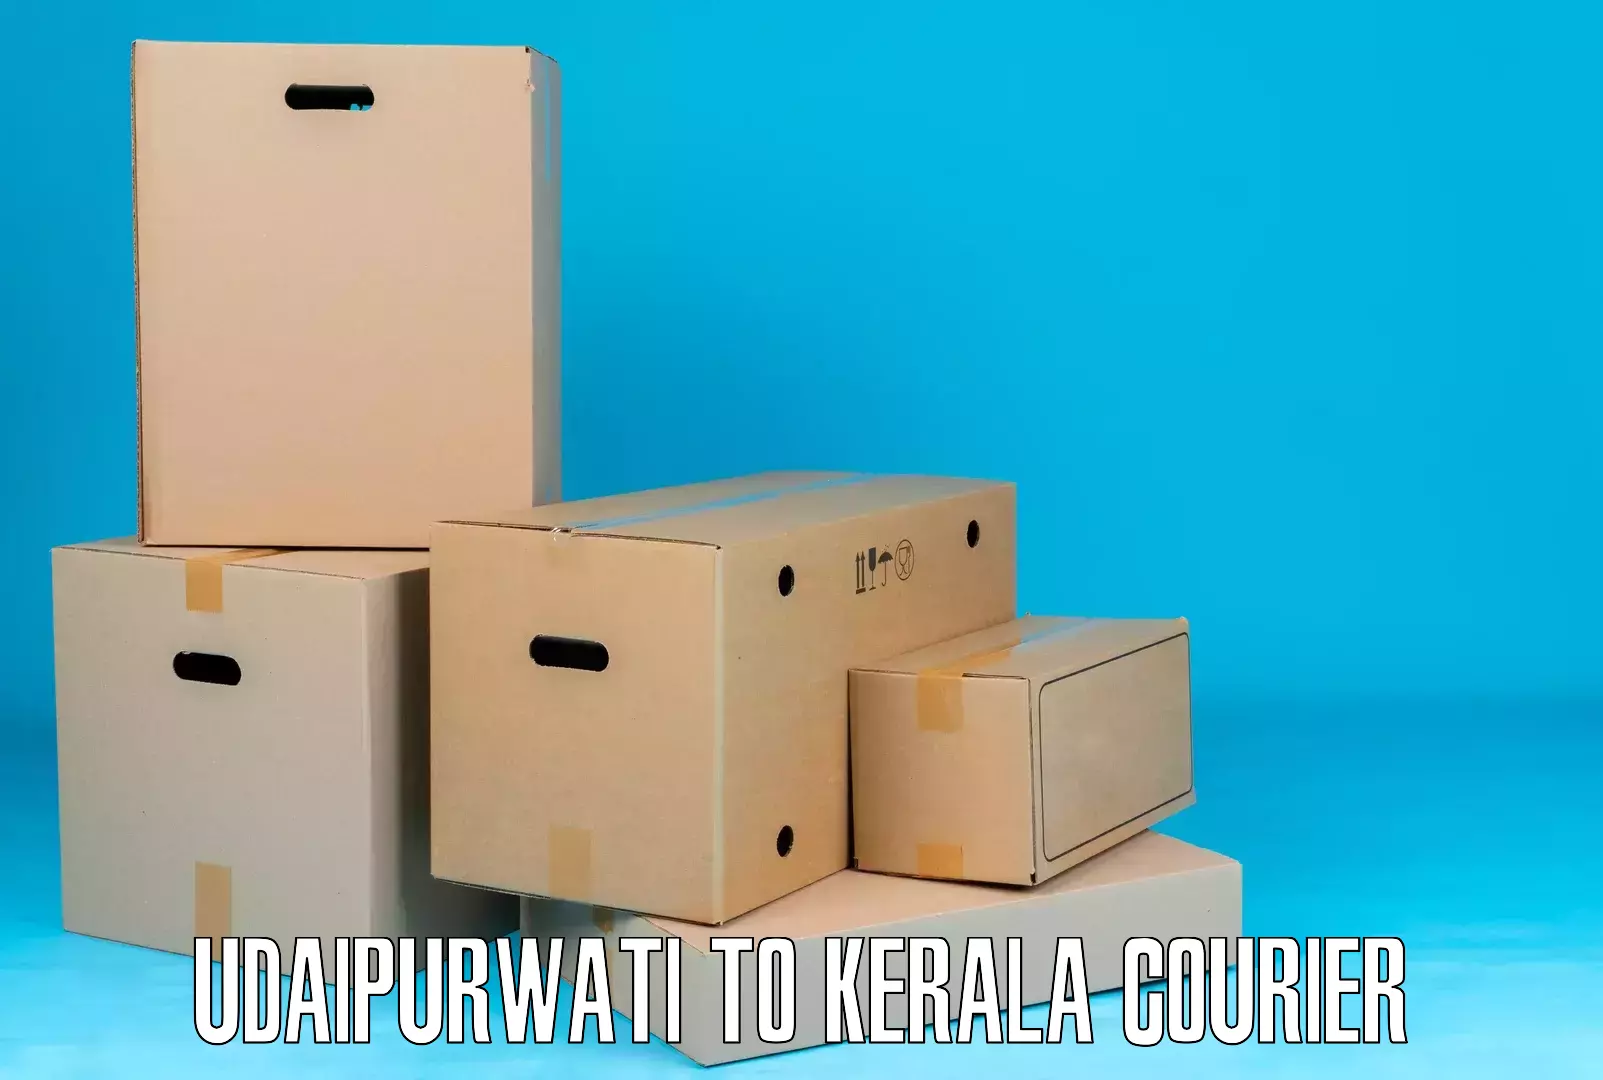 Efficient cargo handling Udaipurwati to Vadakkencherry